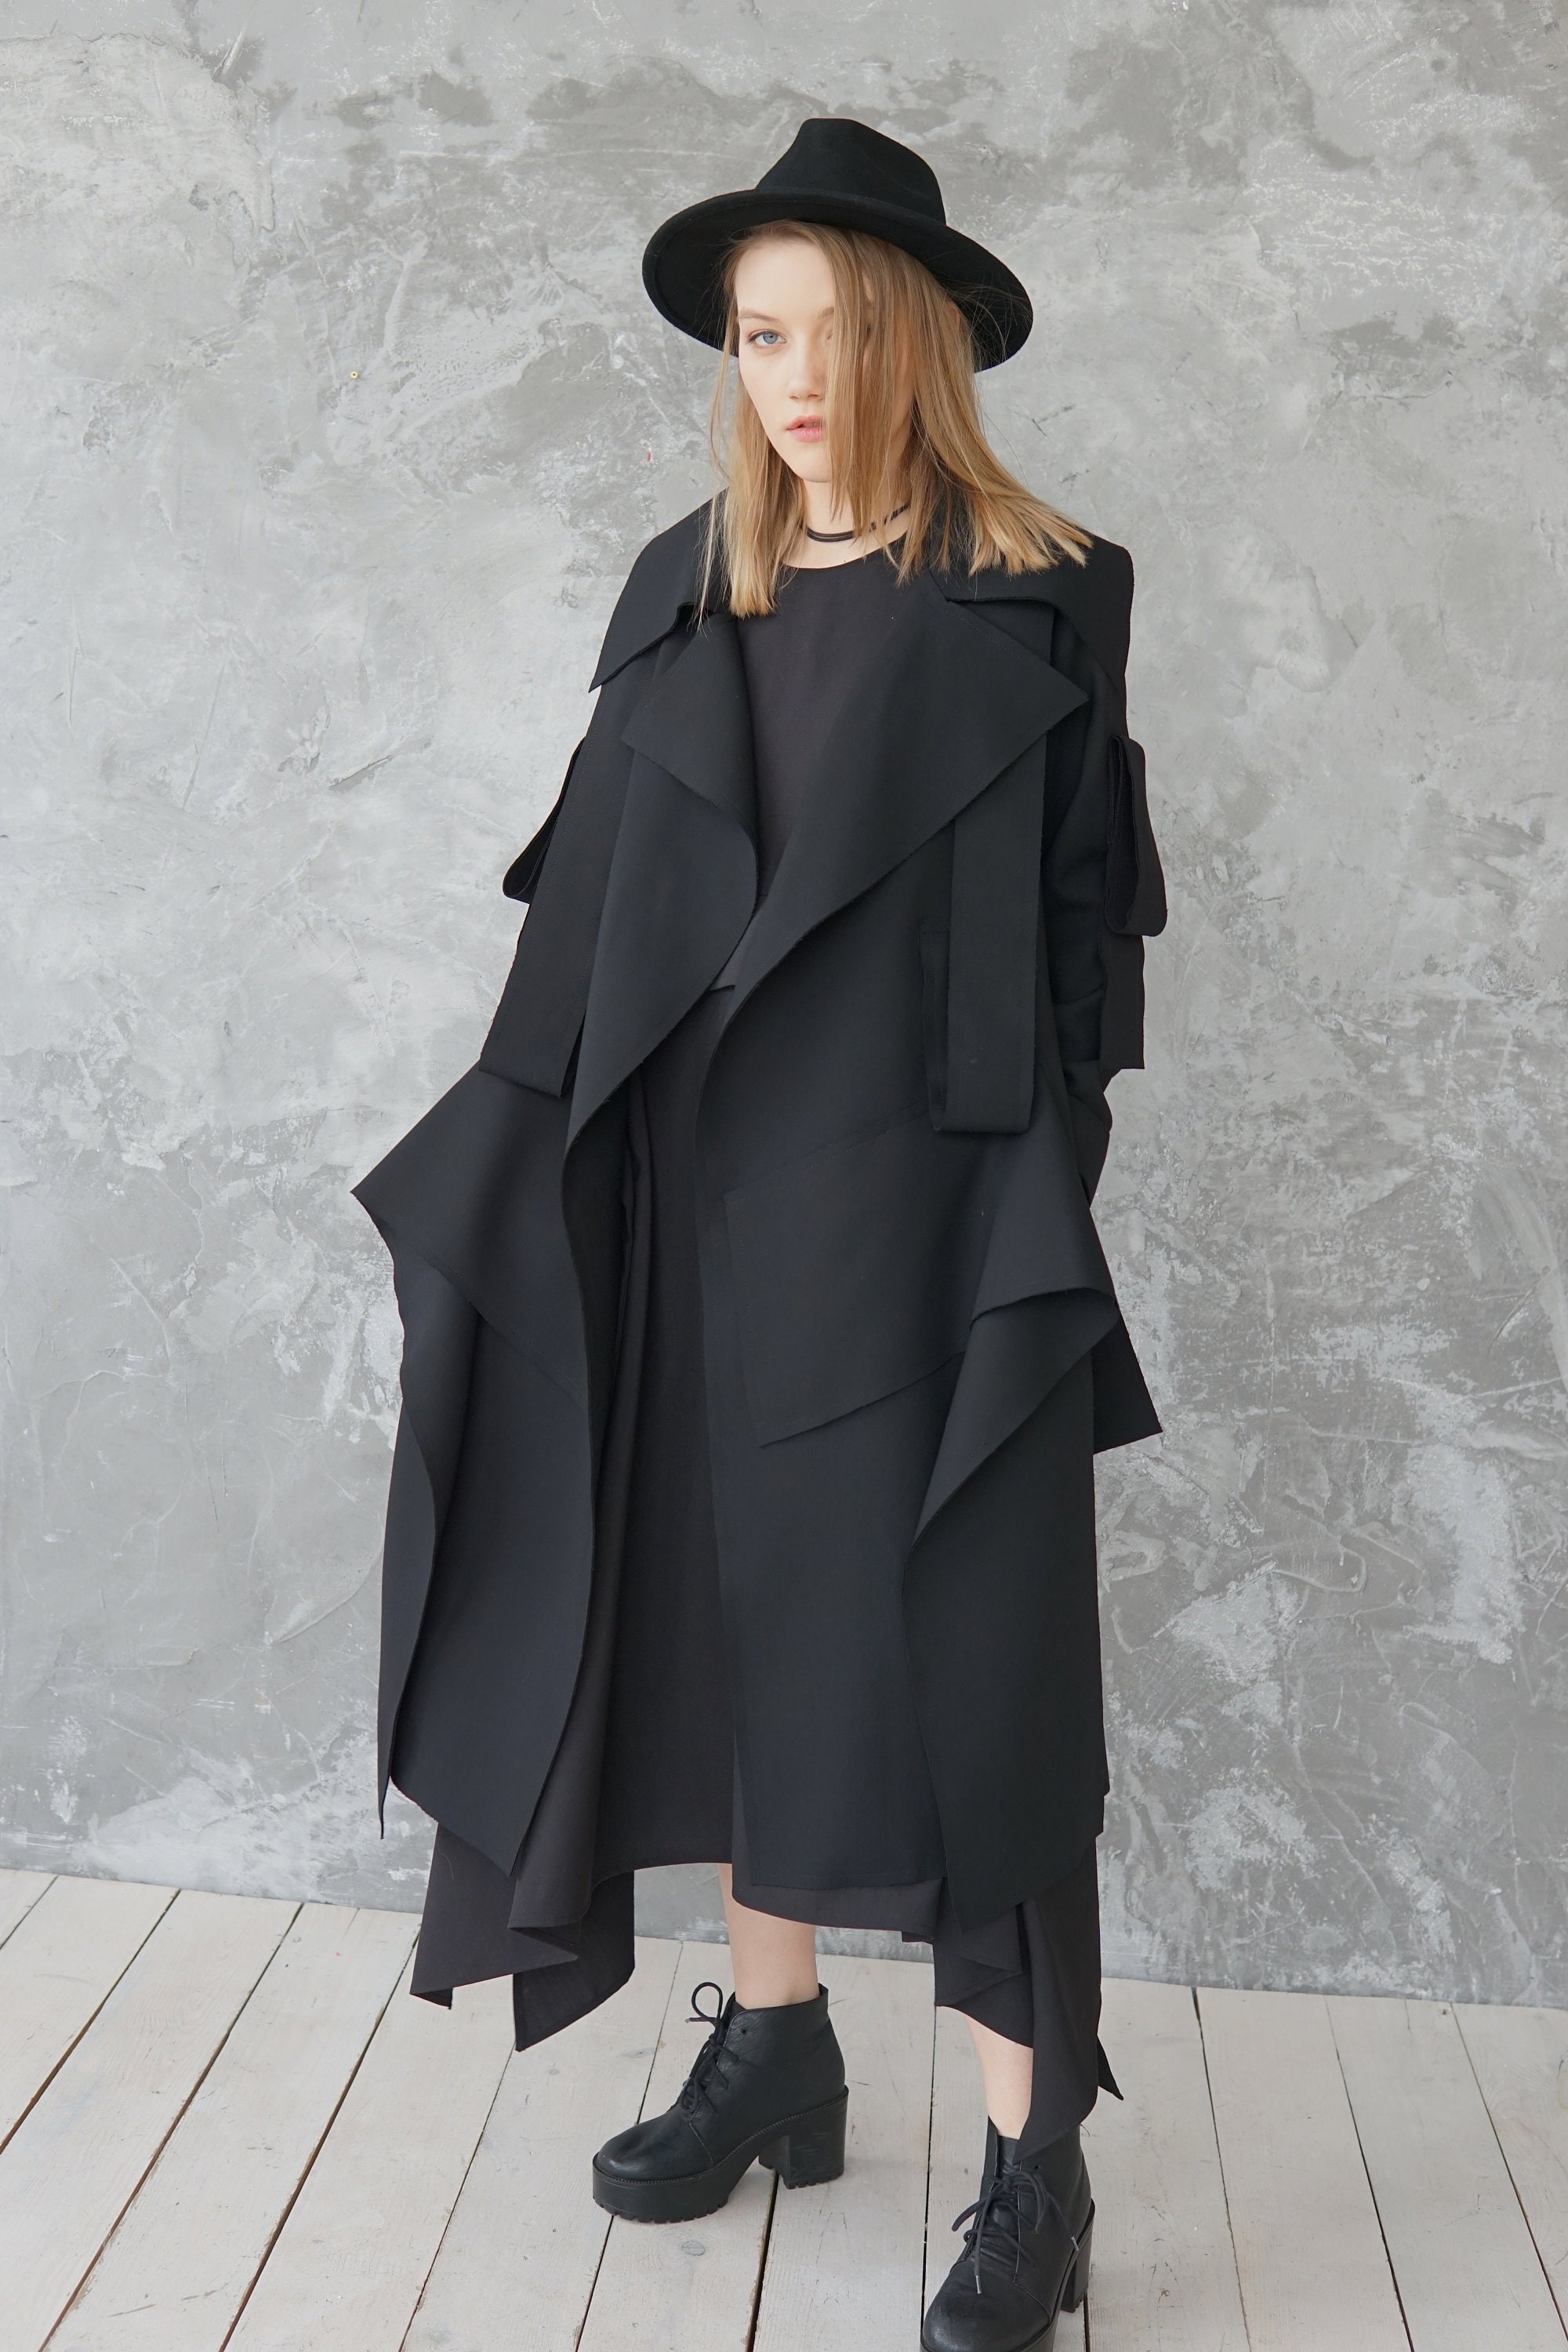 Black Wool Coat / Black Oversized Coat / Black Kimono Coat / | Etsy